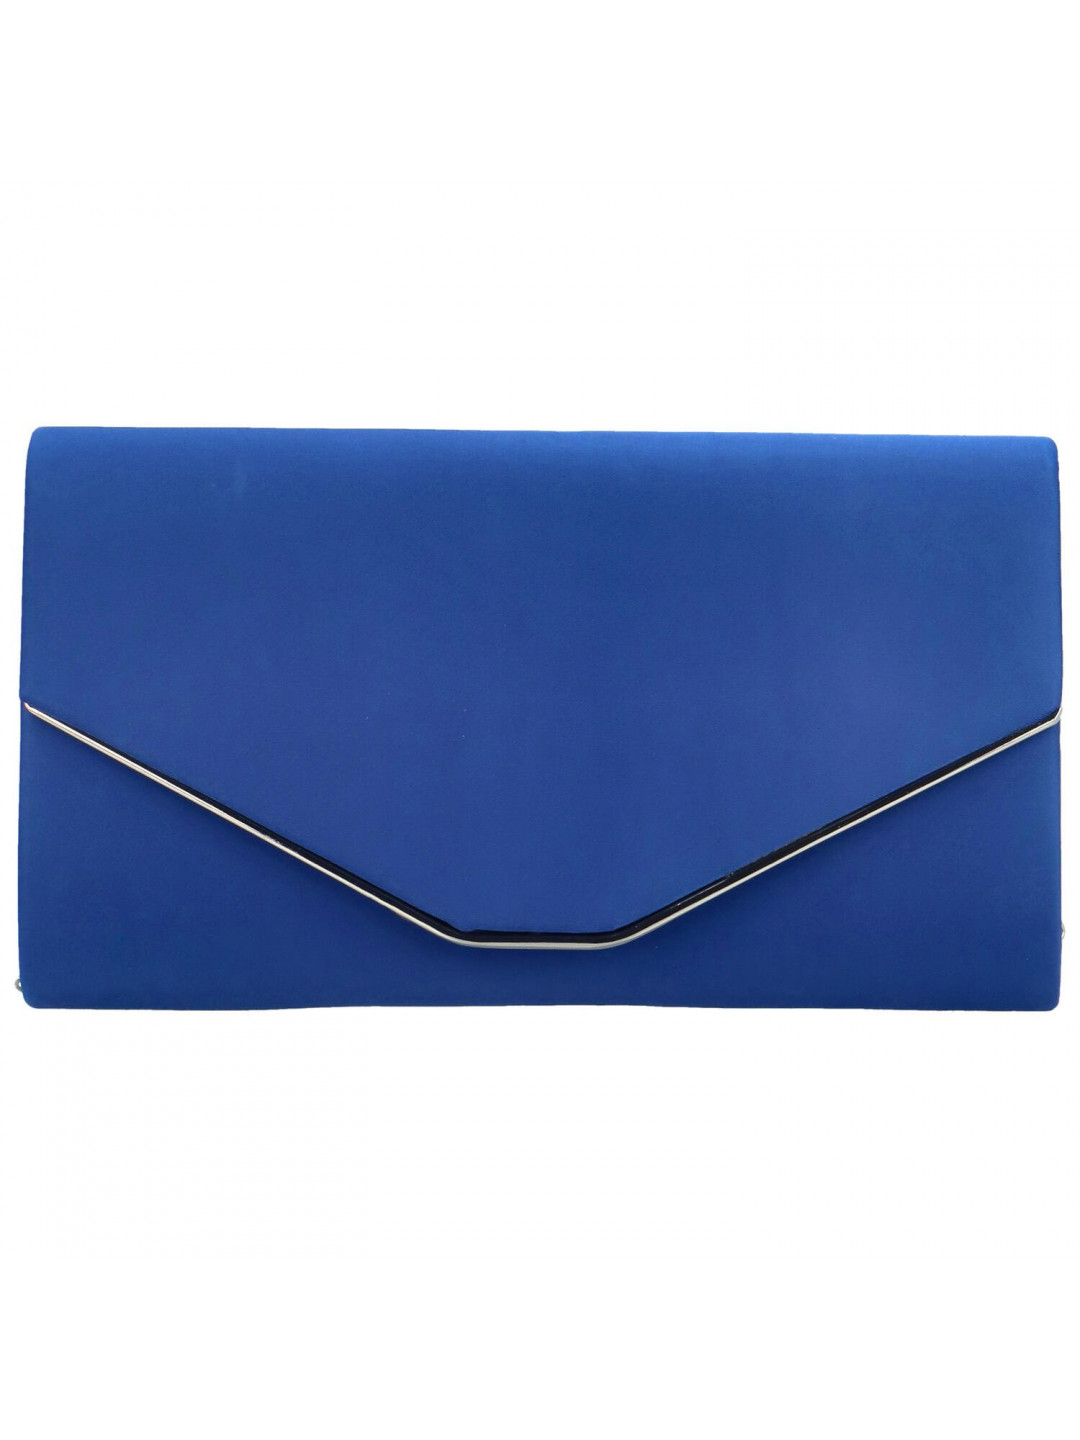 Luxusní společenská kabelka Gisella modrá